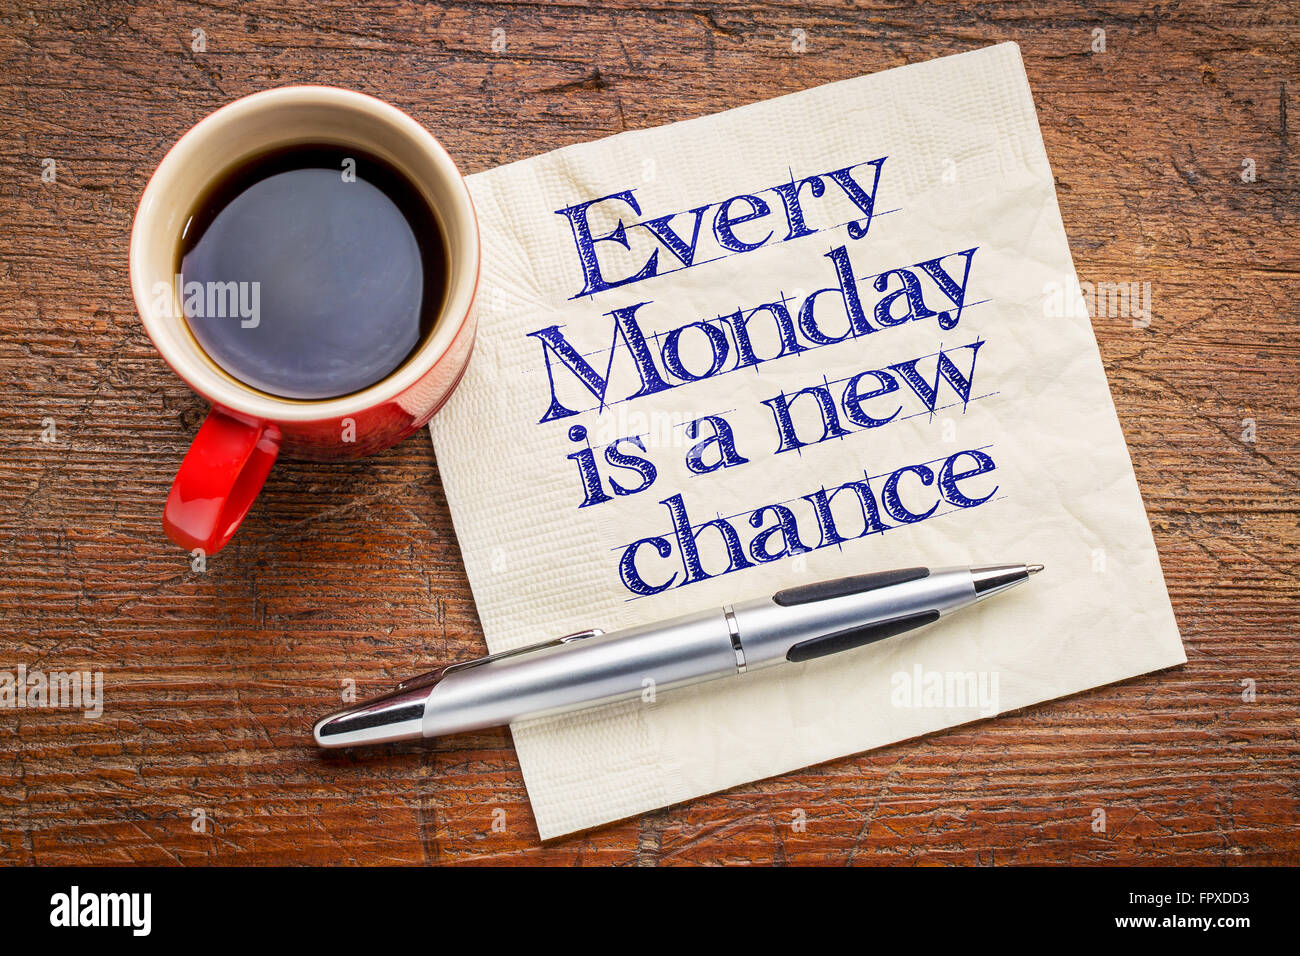 Jeden Montag ist eine neue Chance - motivierende Handschrift auf Serviette mit einer Tasse Kaffee Stockfoto